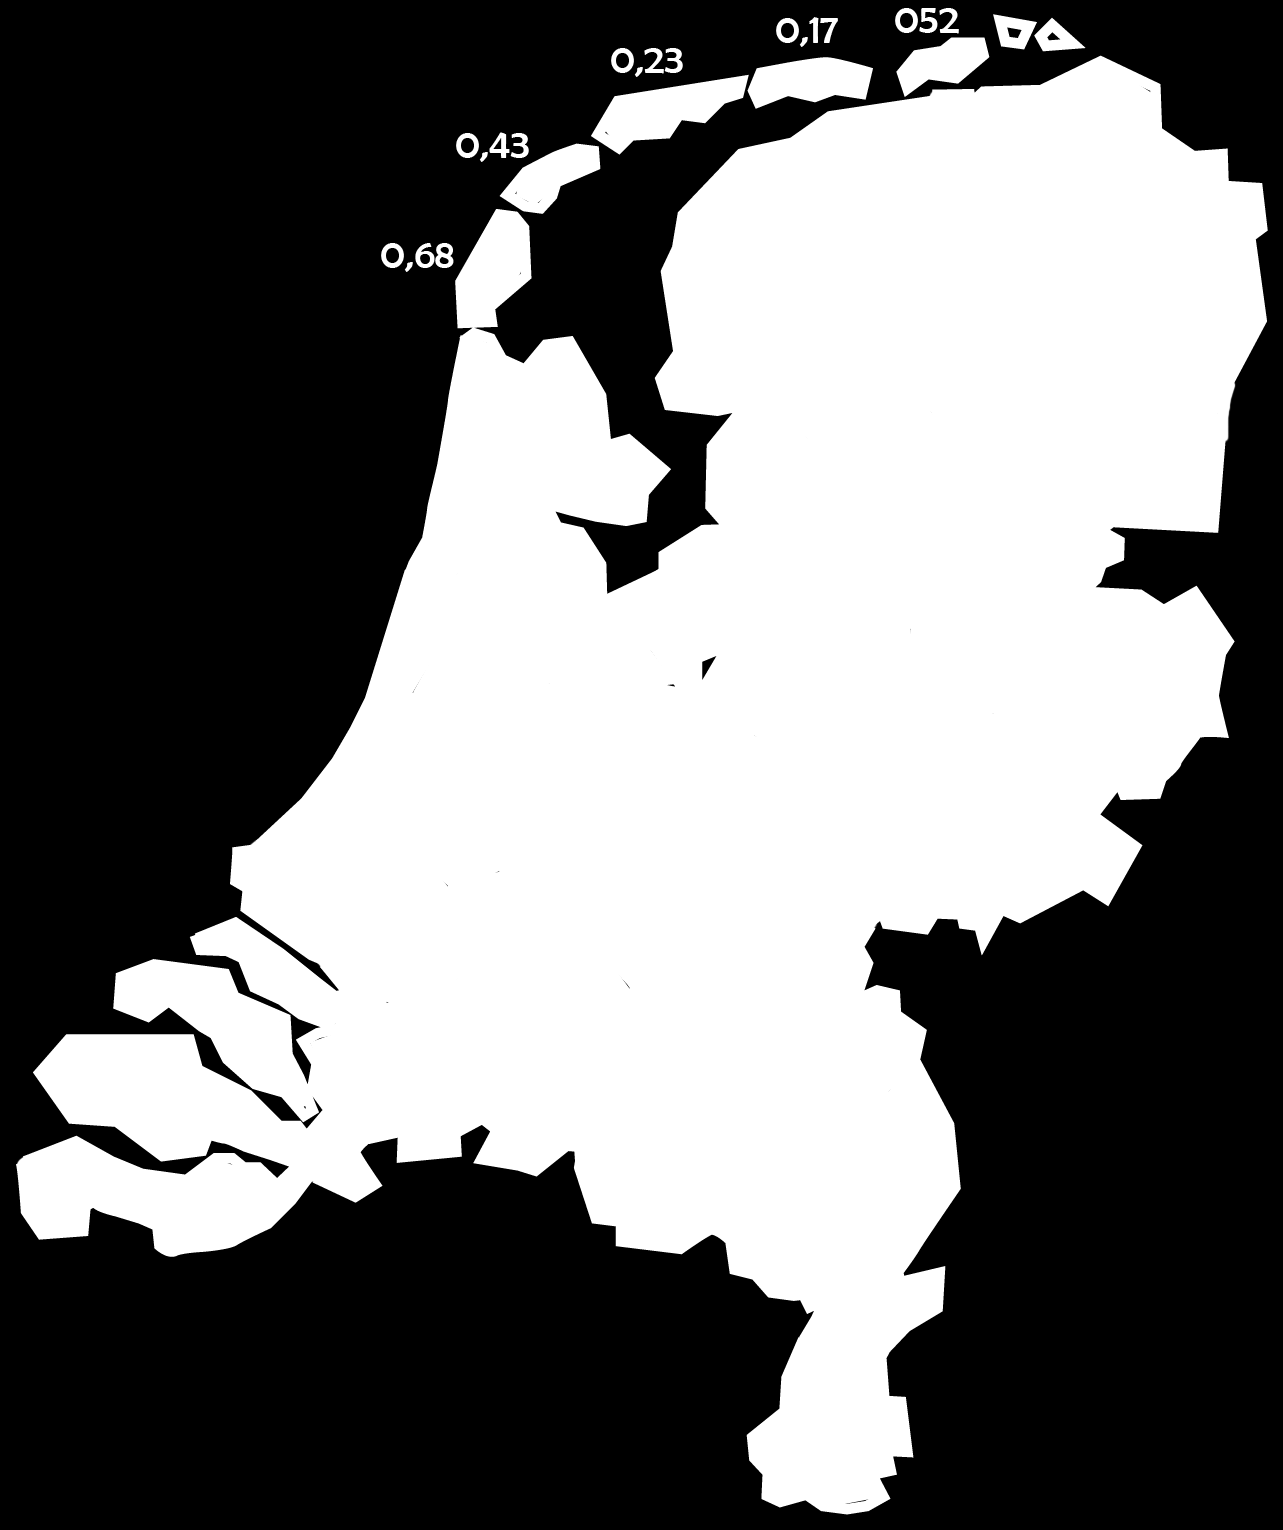 Overzicht aantallen vrijwilligers (burgerhulpverleners) in Nederland* Hieronder ziet u in kleur aangegeven hoe de dekking is van (burger)vrijwilligers per ambulanceregio in Nederland.